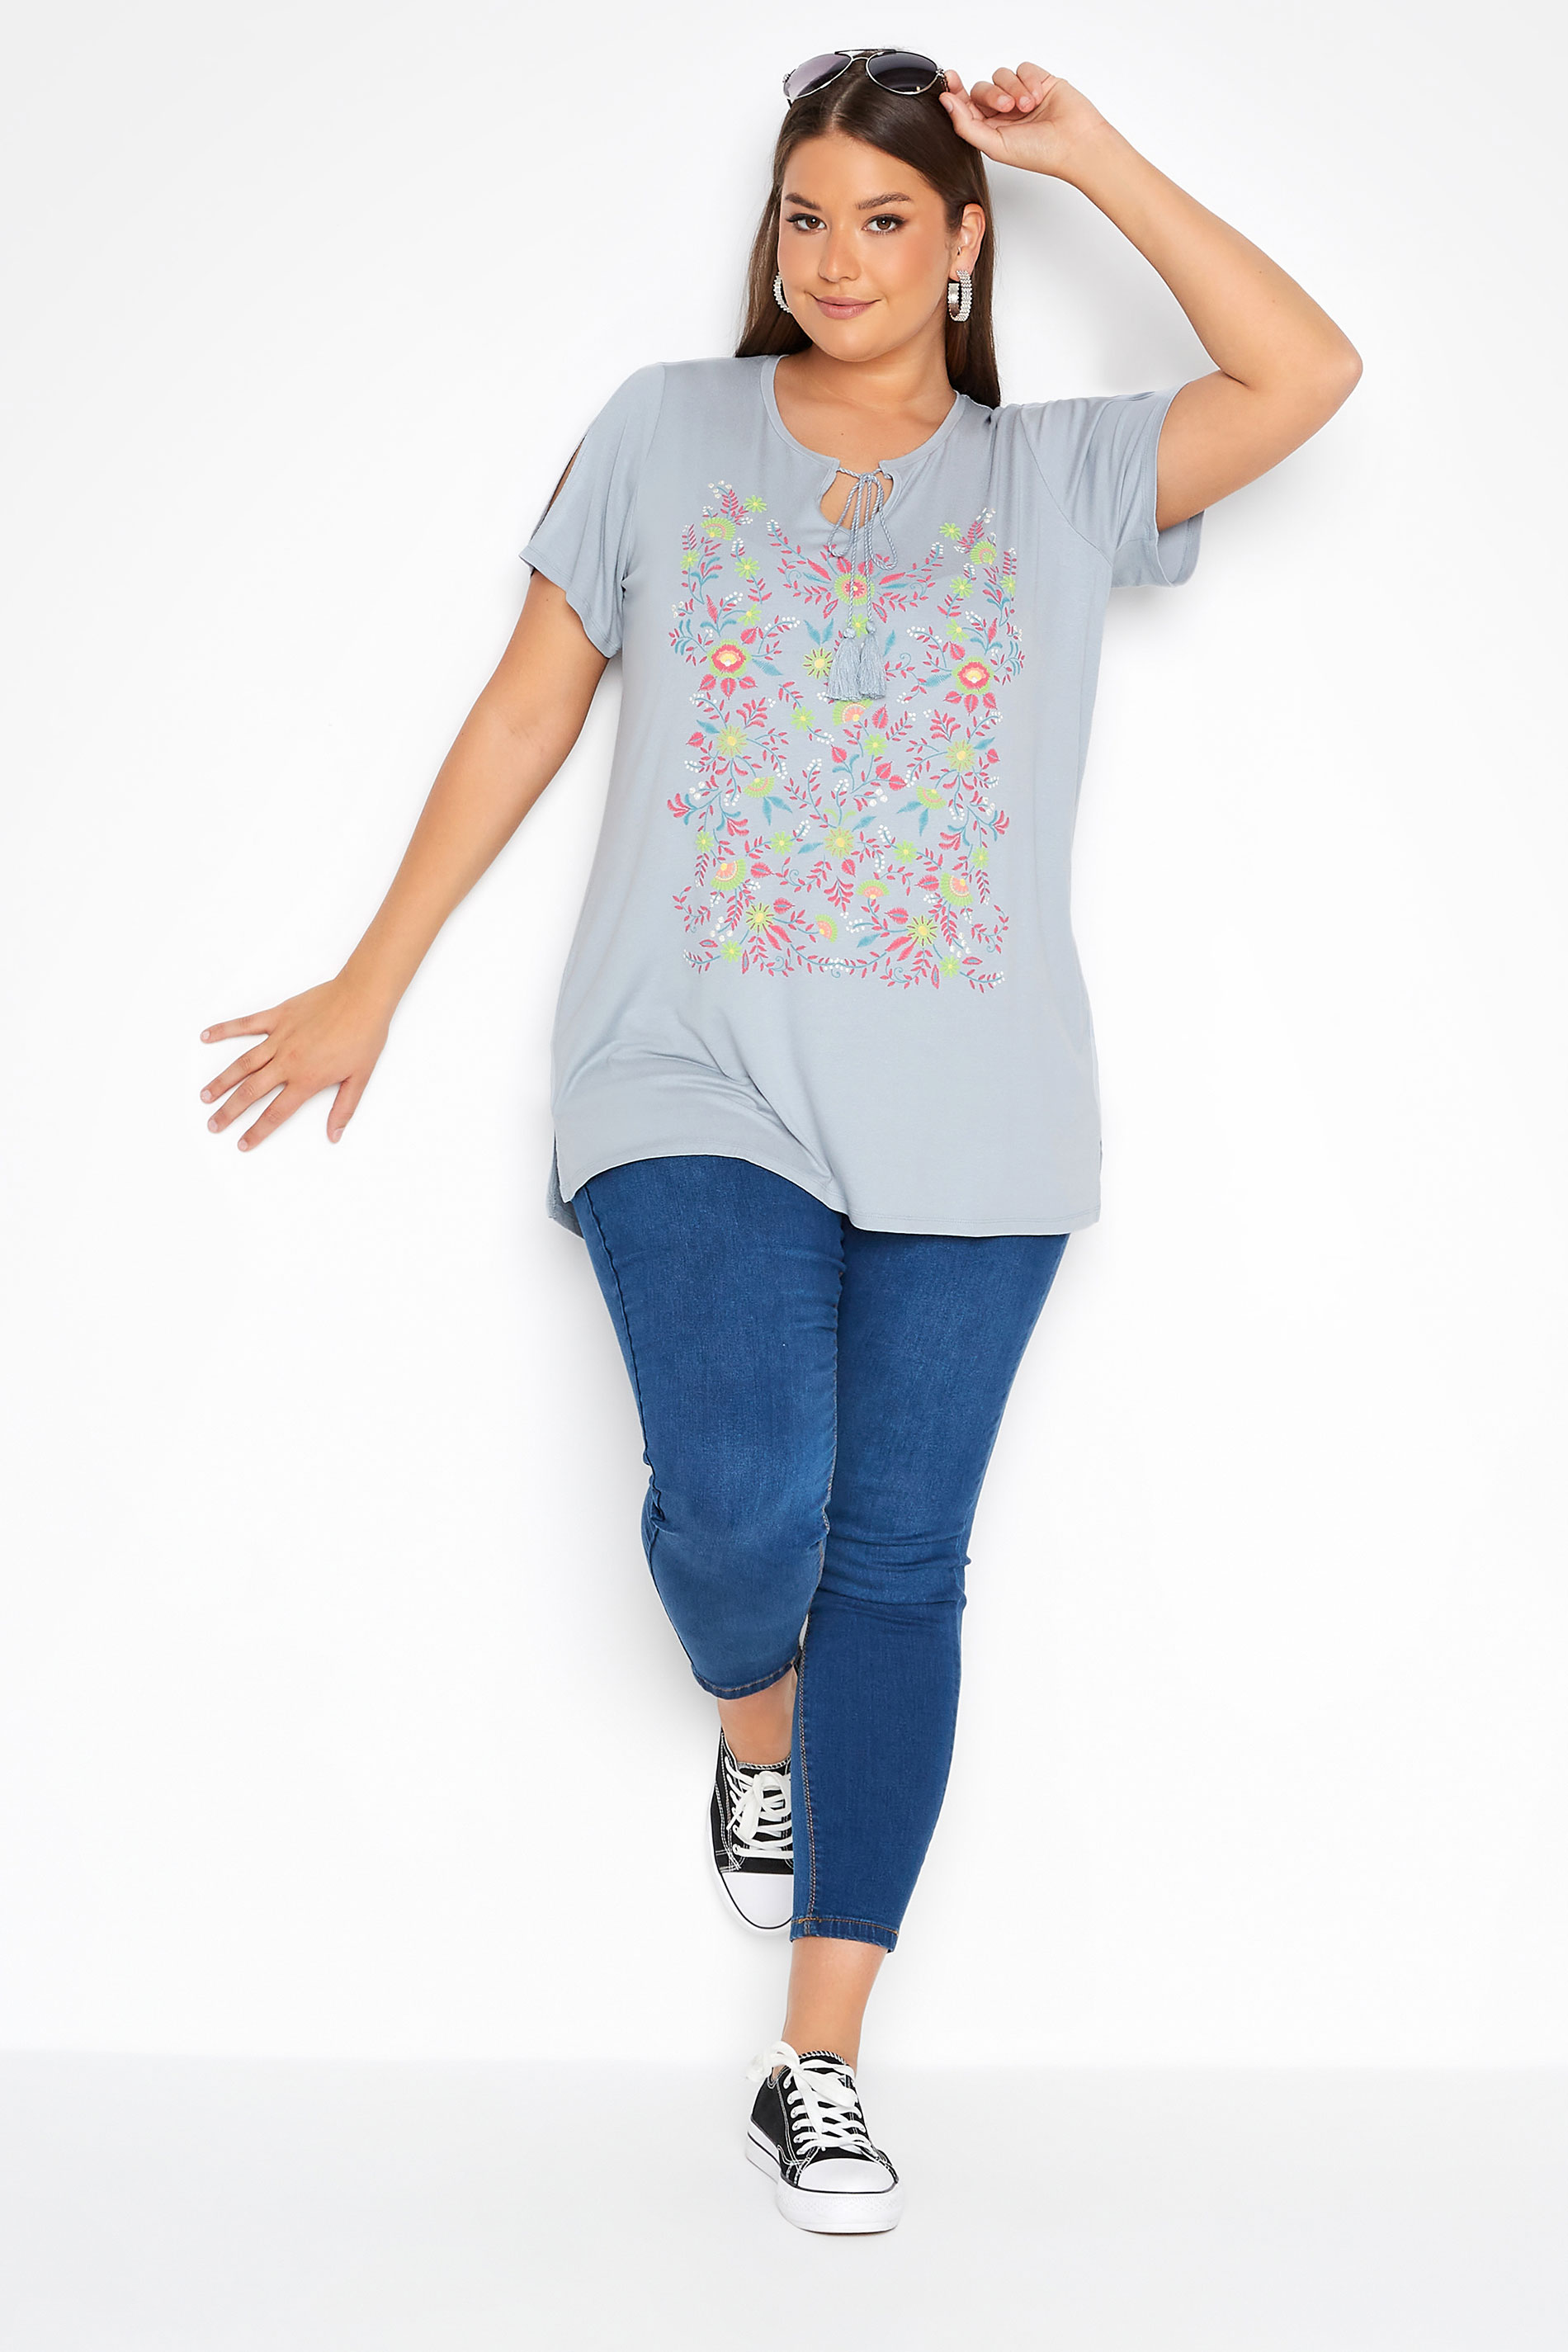 Grande taille  Tops Grande taille  T-Shirts | T-Shirt Gris Design Floral Manches Découpées - MF71066